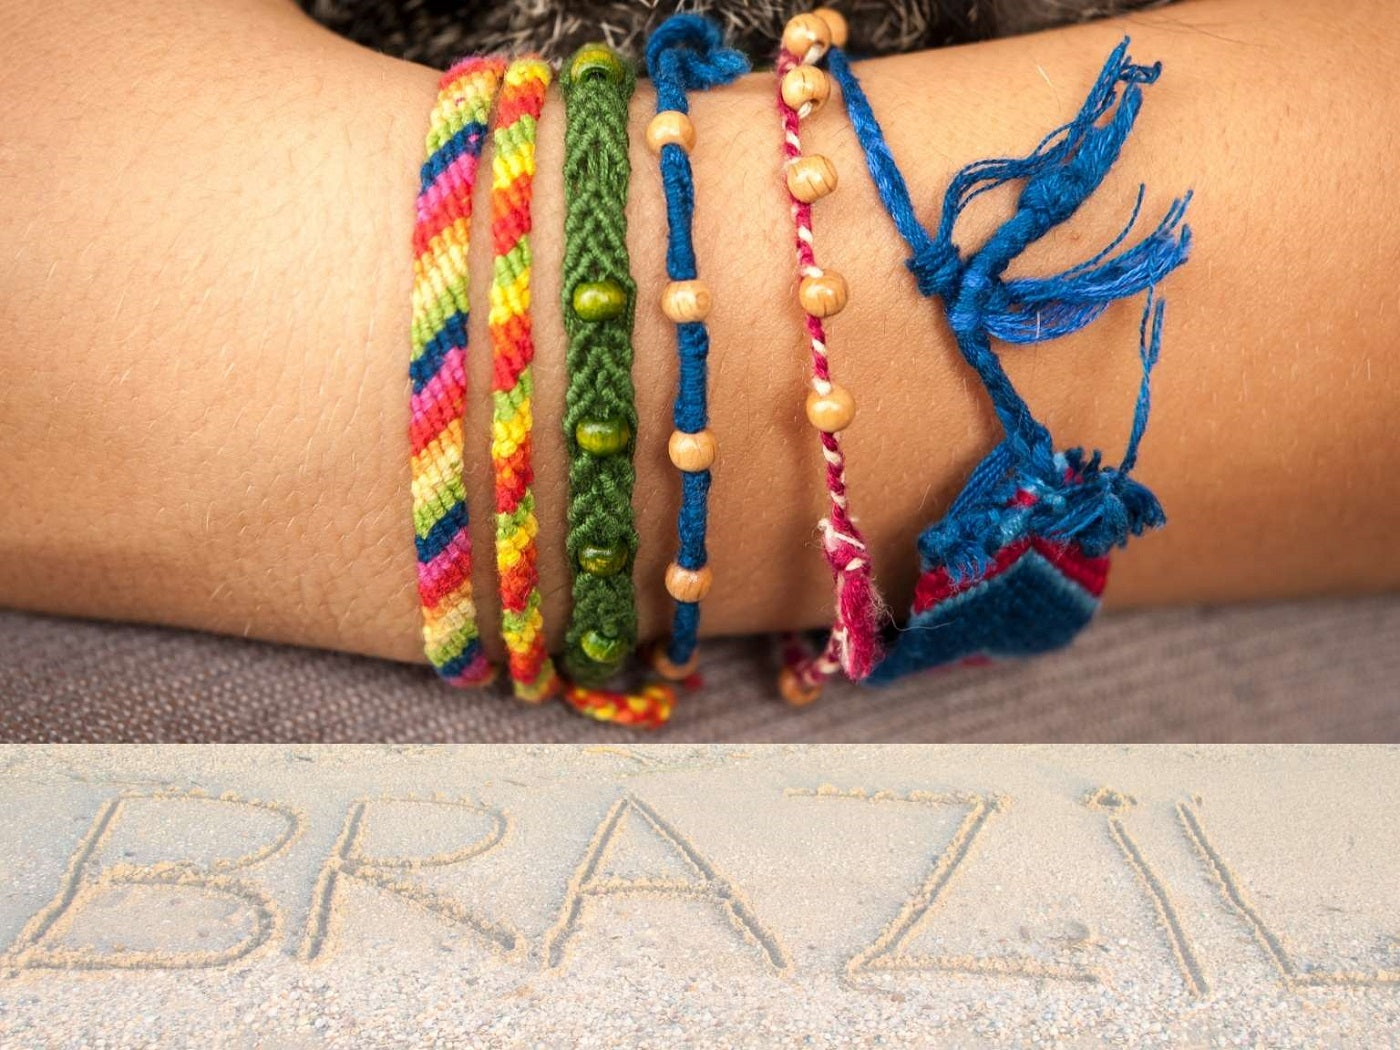 Comment faire un bracelet brésilien ? - La Compagnie des Petits